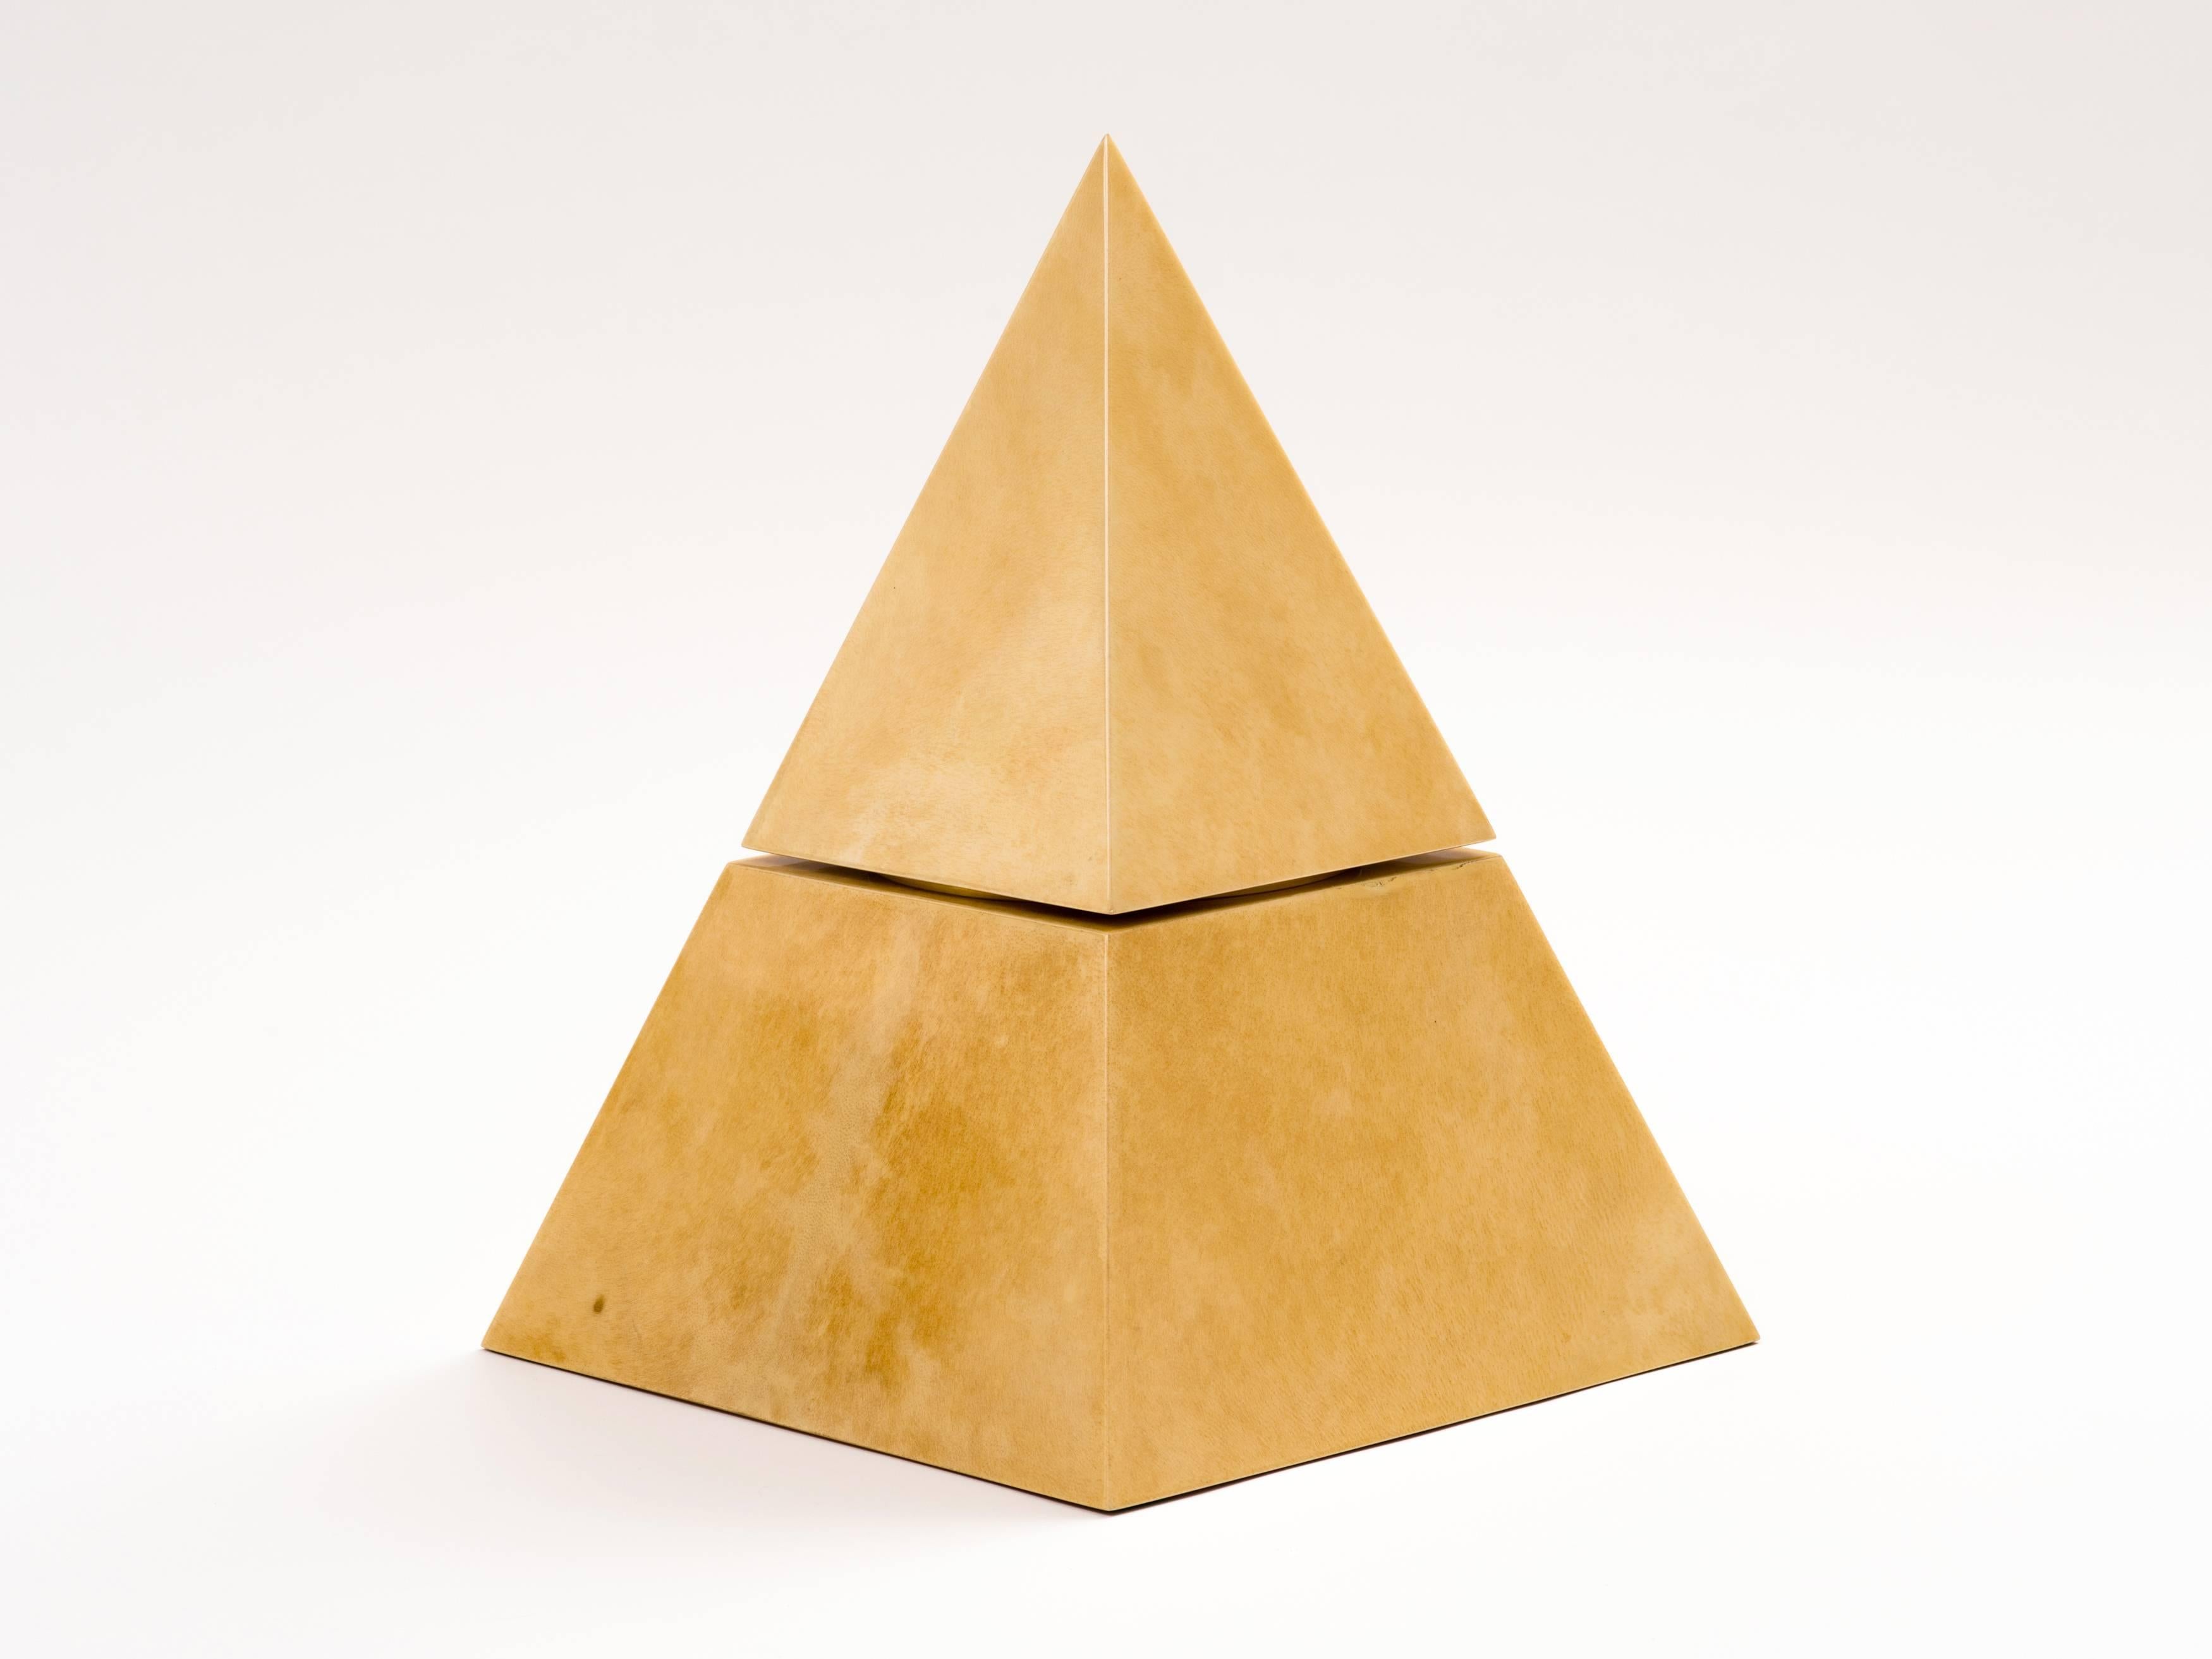 Dieser Weinkühler oder Eiskübel in Pyramidenform ist ein außergewöhnliches Beispiel für ein seltenes Design von Aldo Tura. Er besteht aus einem Korpus aus lackiertem Ziegenleder und einer Unterseite aus lackiertem Mahagoni, in die ein